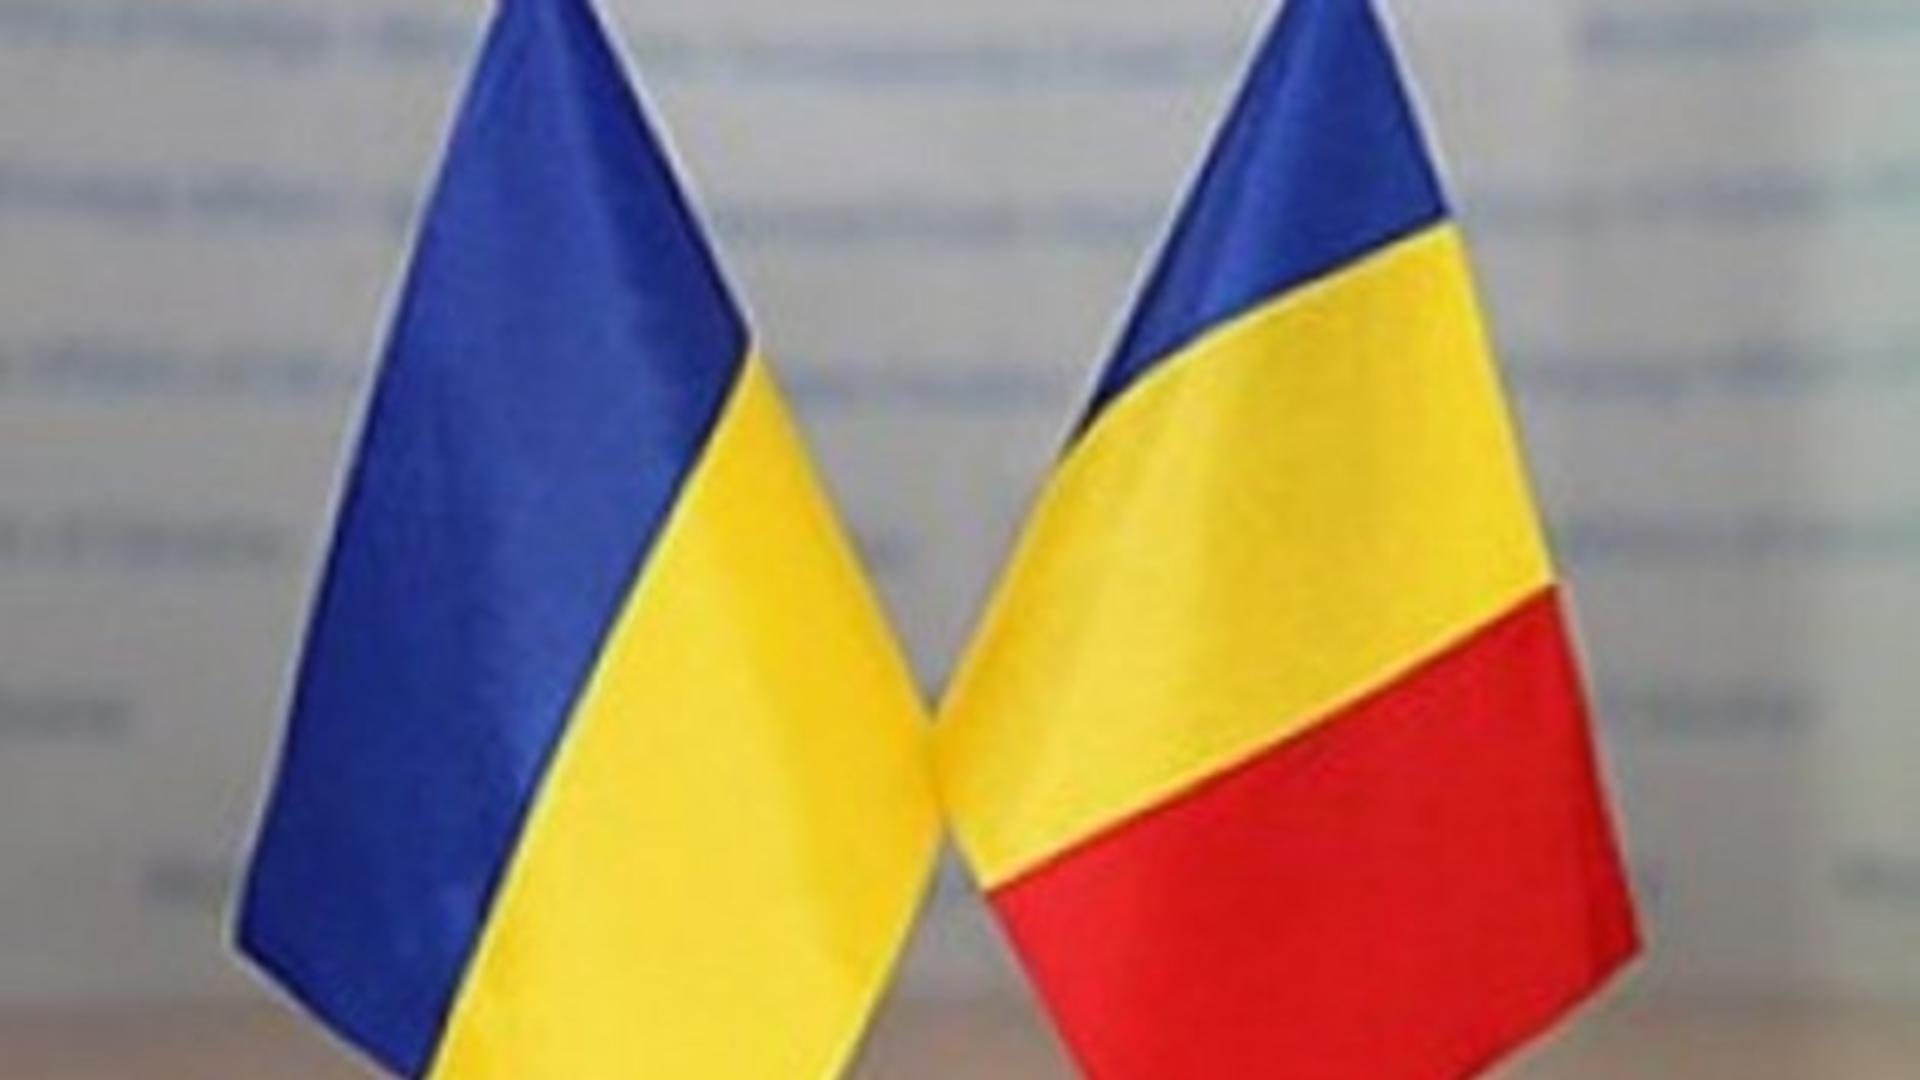 Ambasada Ucrainei a reacționat la acuzațiile din România privind legea minorităților: Au apărut informații și comentarii distorsionate